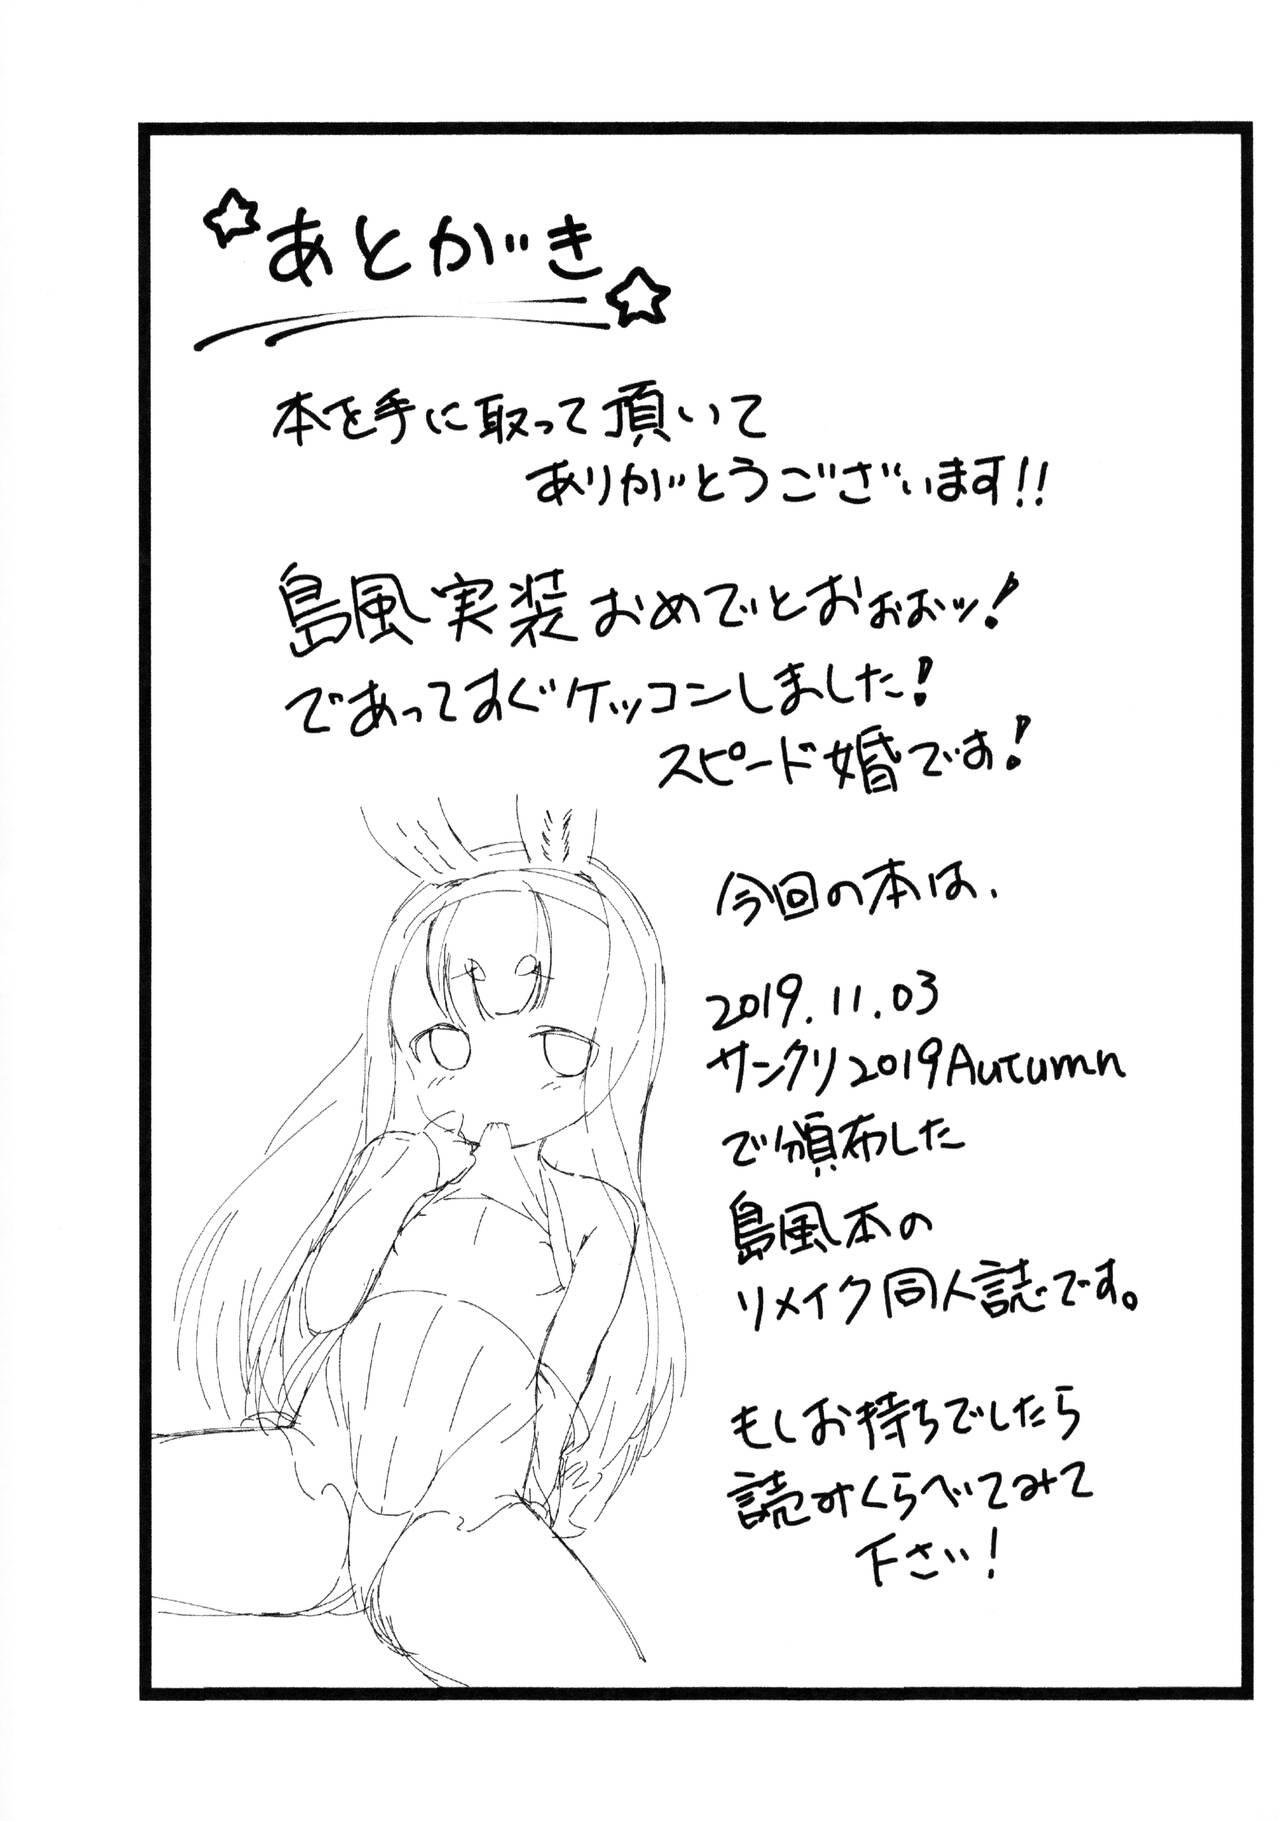 Nudity RE: Shimakaze o Shiki shite hoshii de arimasu! - Azur lane Sola - Page 9